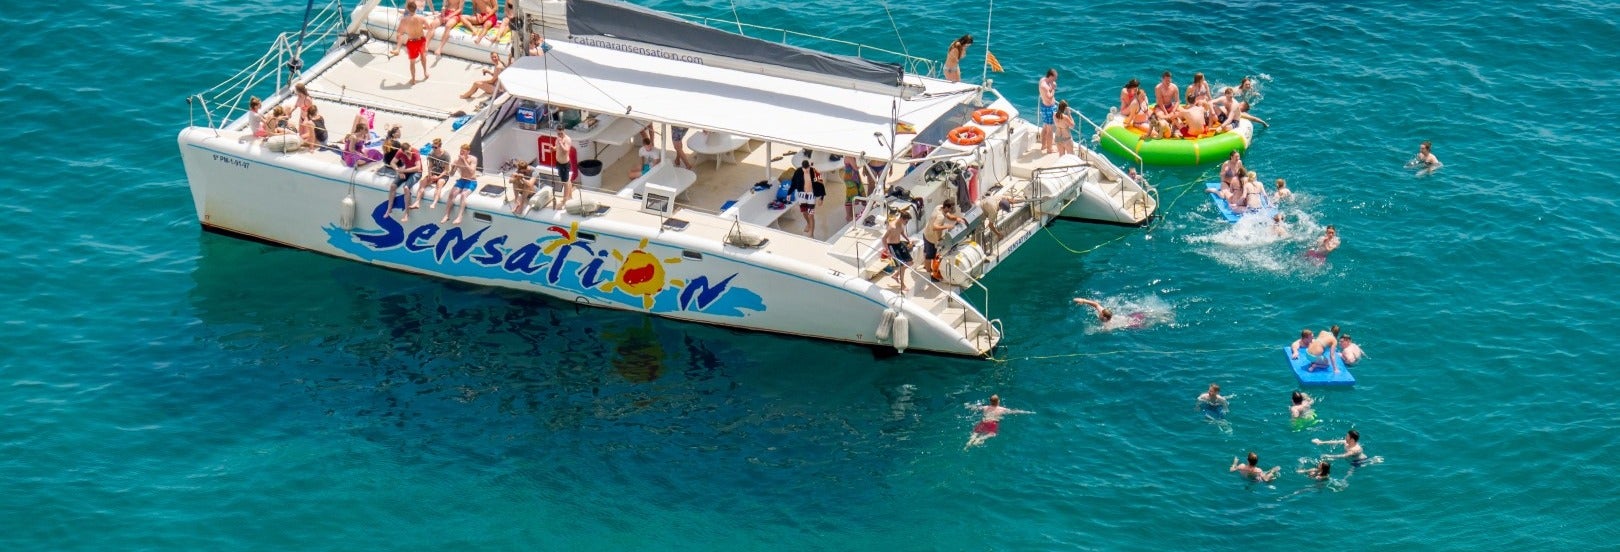 Fête sur le catamaran Sensation Barcelona